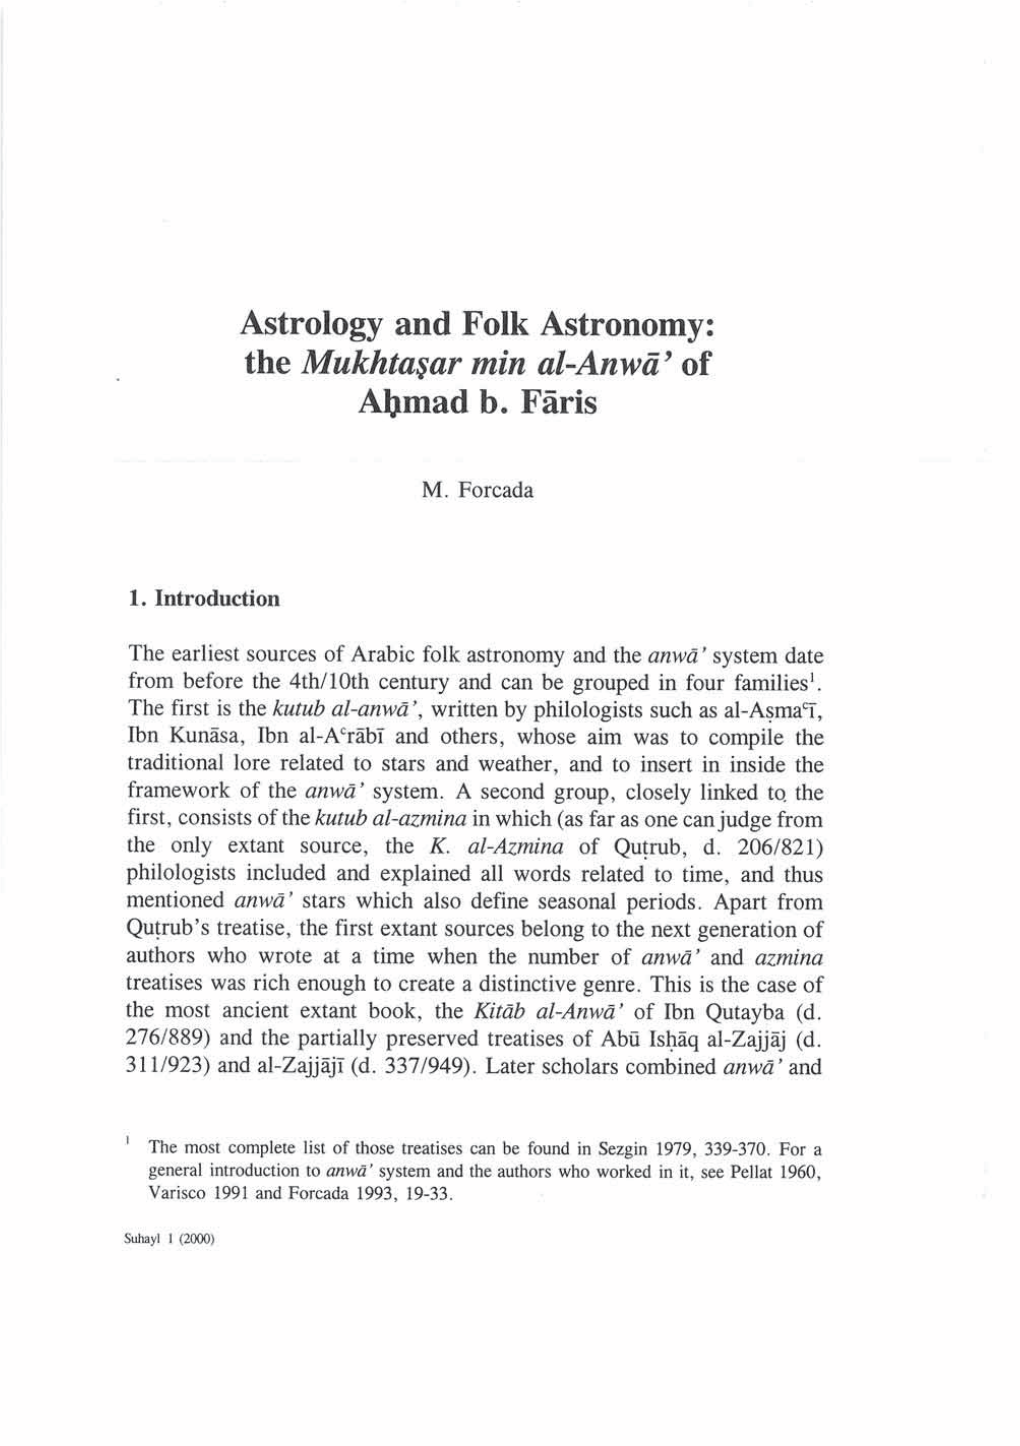 Astrology and Folk Astronorny: the Mukhta$Ar Min Al-Anwa' of Al)Rnad B